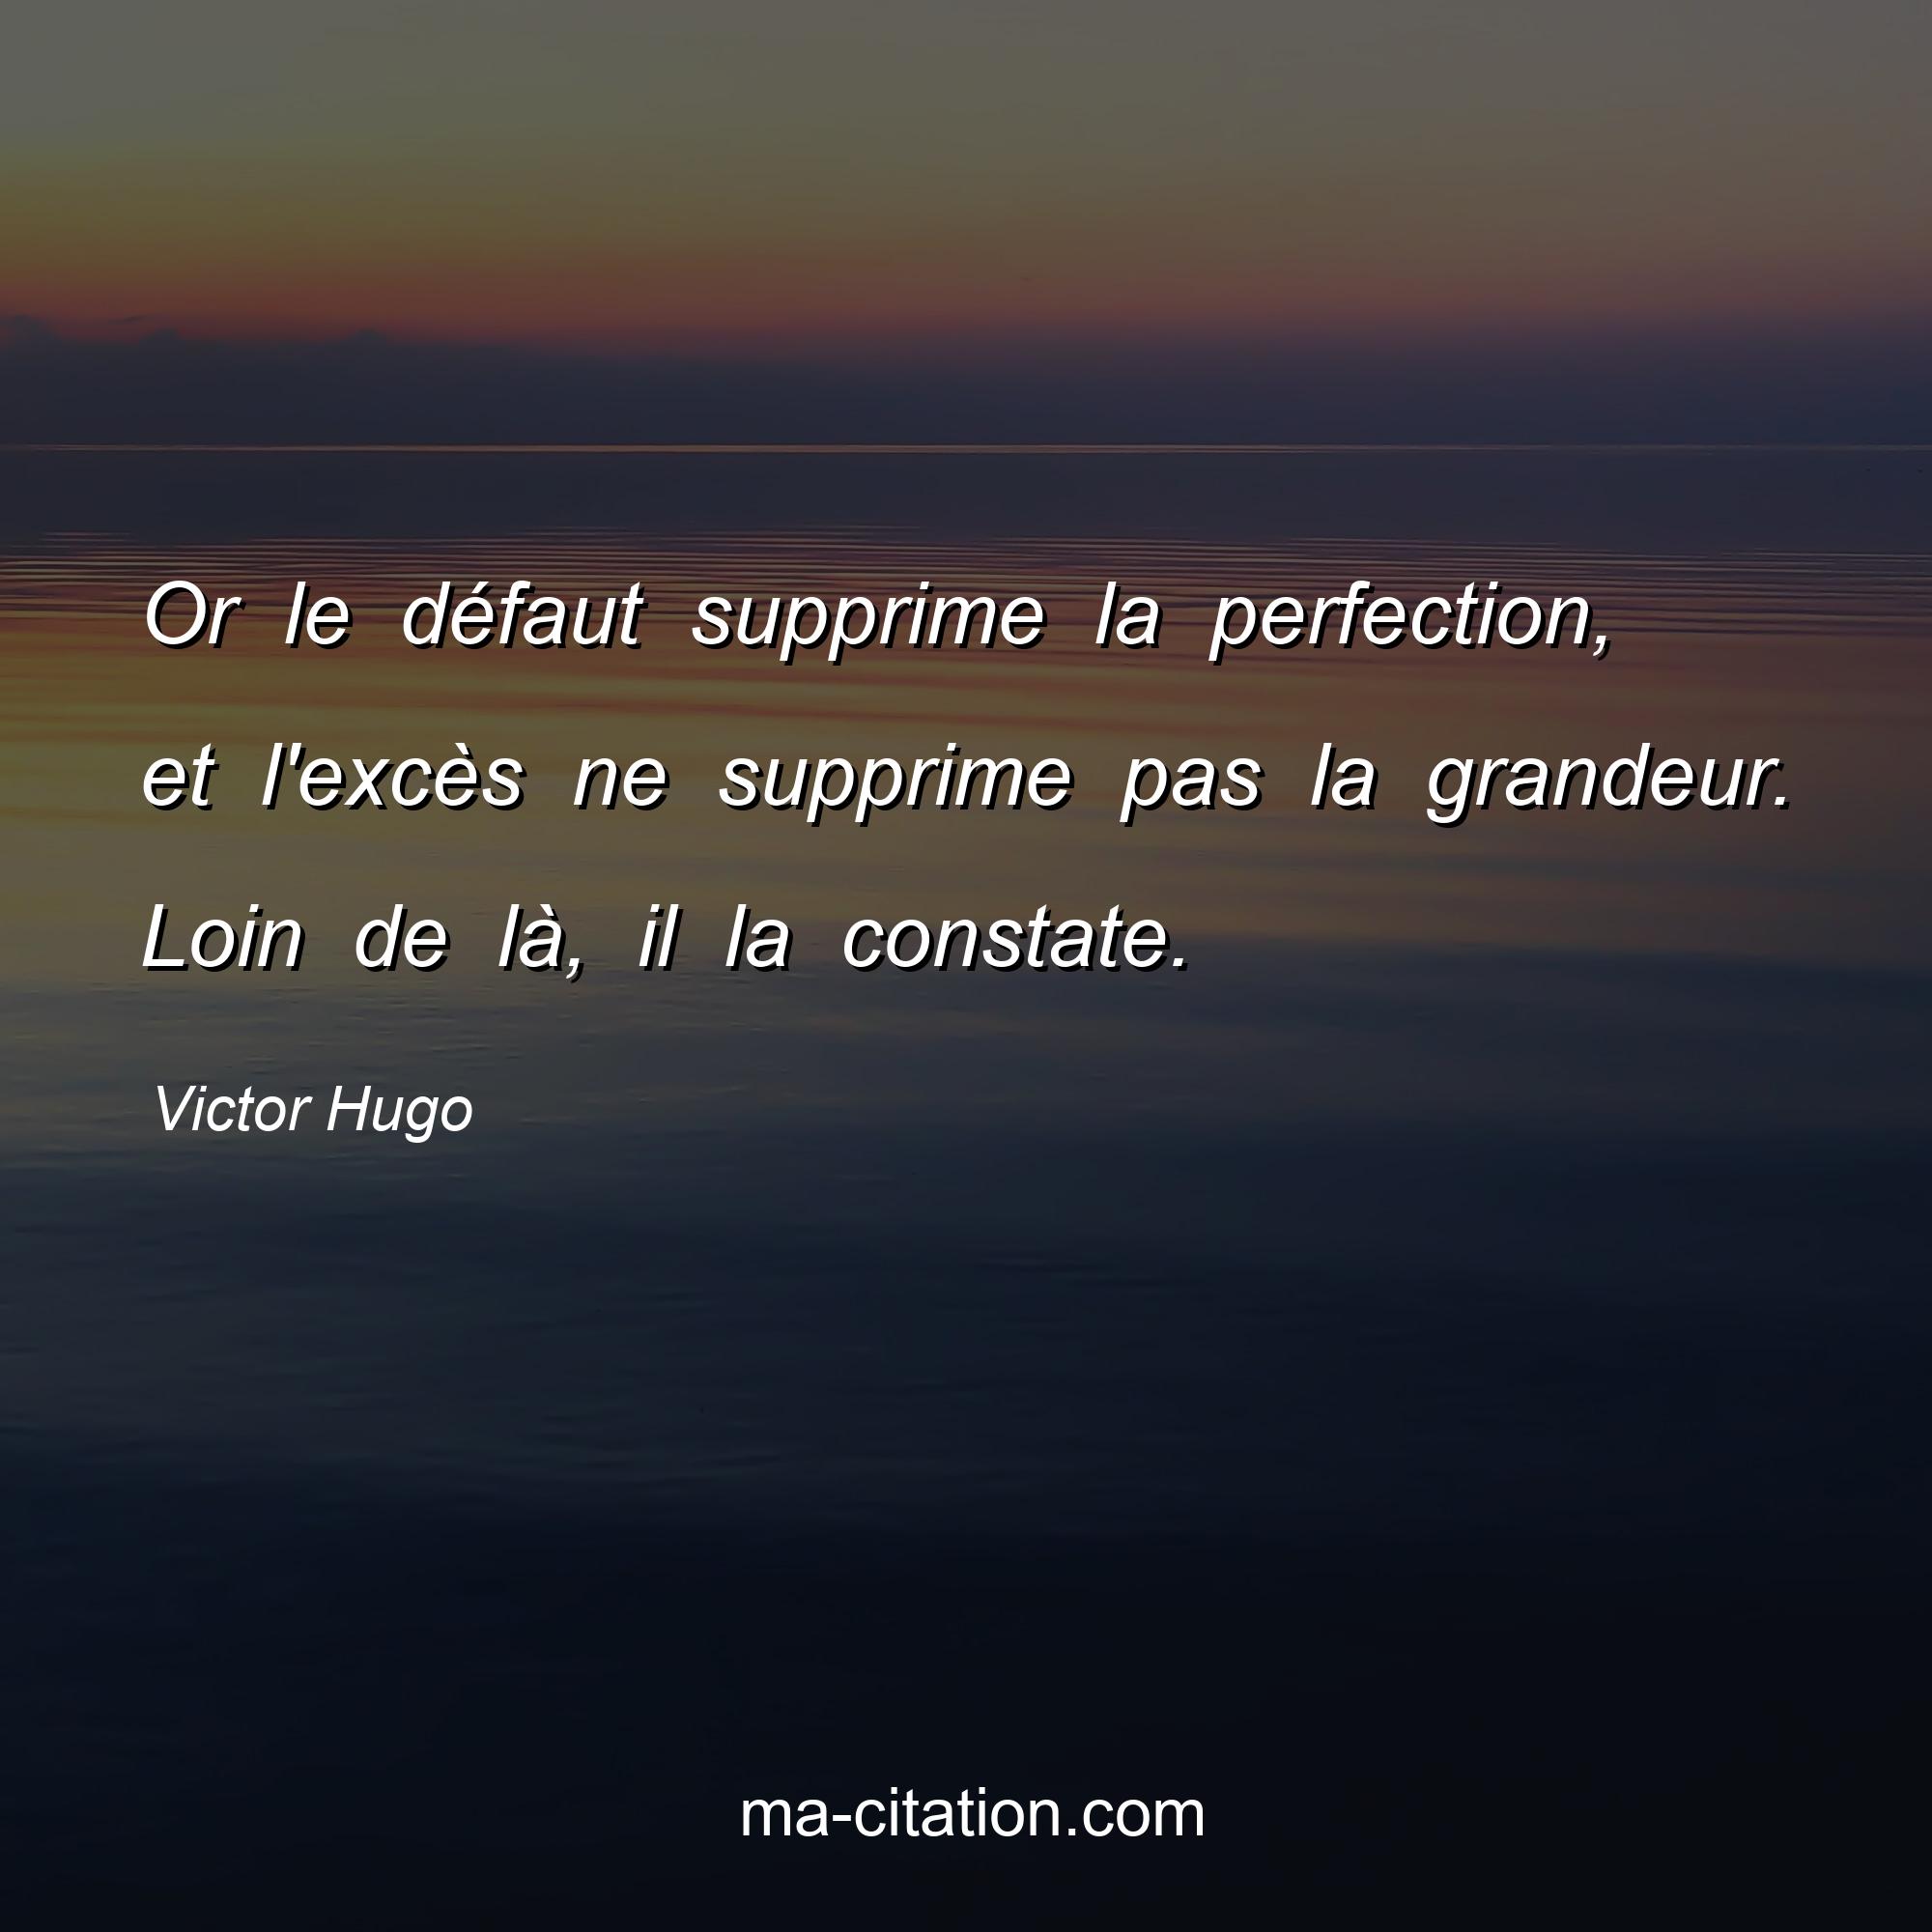 Victor Hugo : Or le défaut supprime la perfection, et l'excès ne supprime pas la grandeur. Loin de là, il la constate.